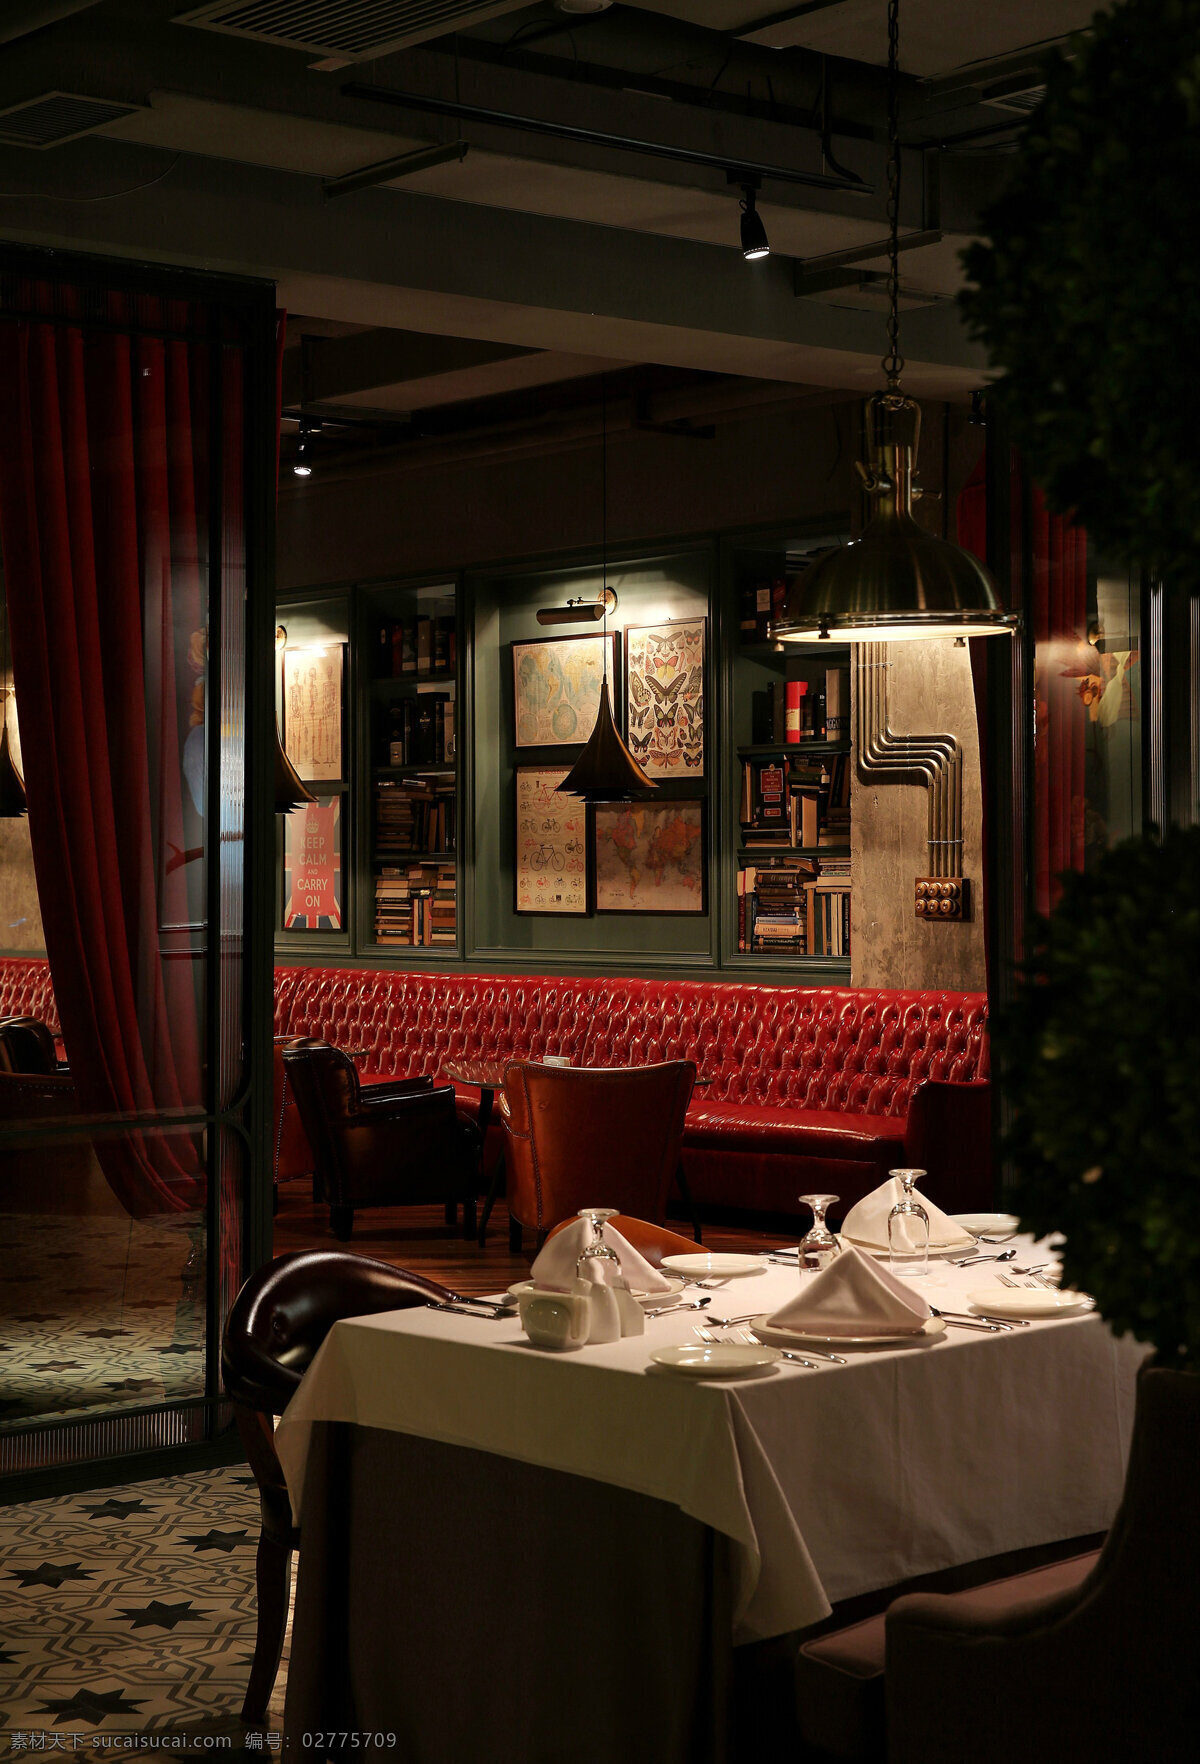 时尚 室内 餐厅 背景 墙 效果图 室内设计 装修 装修设计 环境设计 高清 背景墙 餐桌 复古 红色